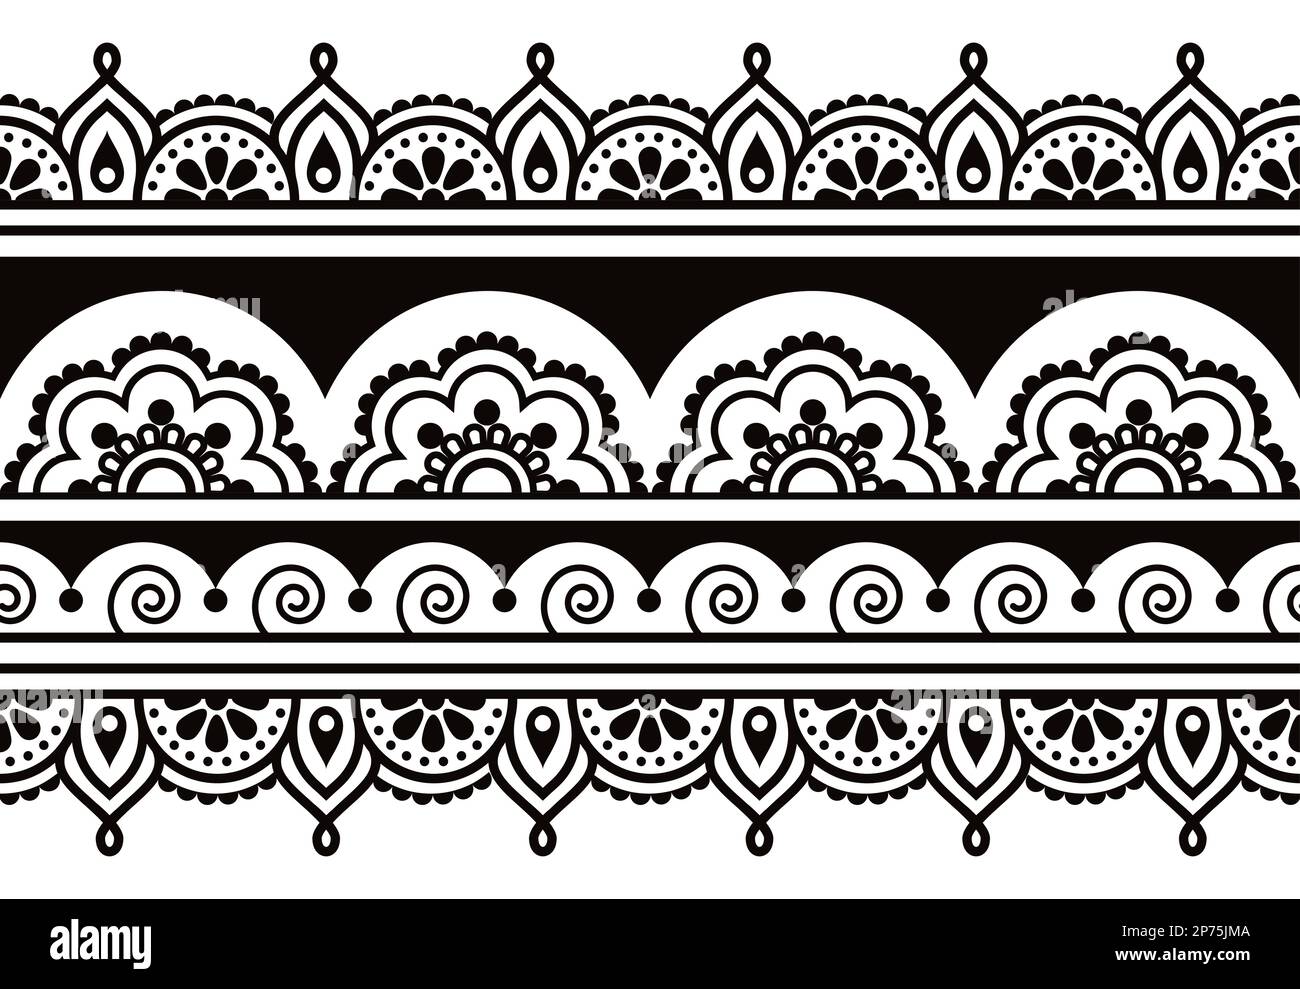 Vom indischen Mehndi-Tattoo-Stil inspiriertes Vektormuster in Schwarz und Weiß mit Wirbeln und Blumen Stock Vektor